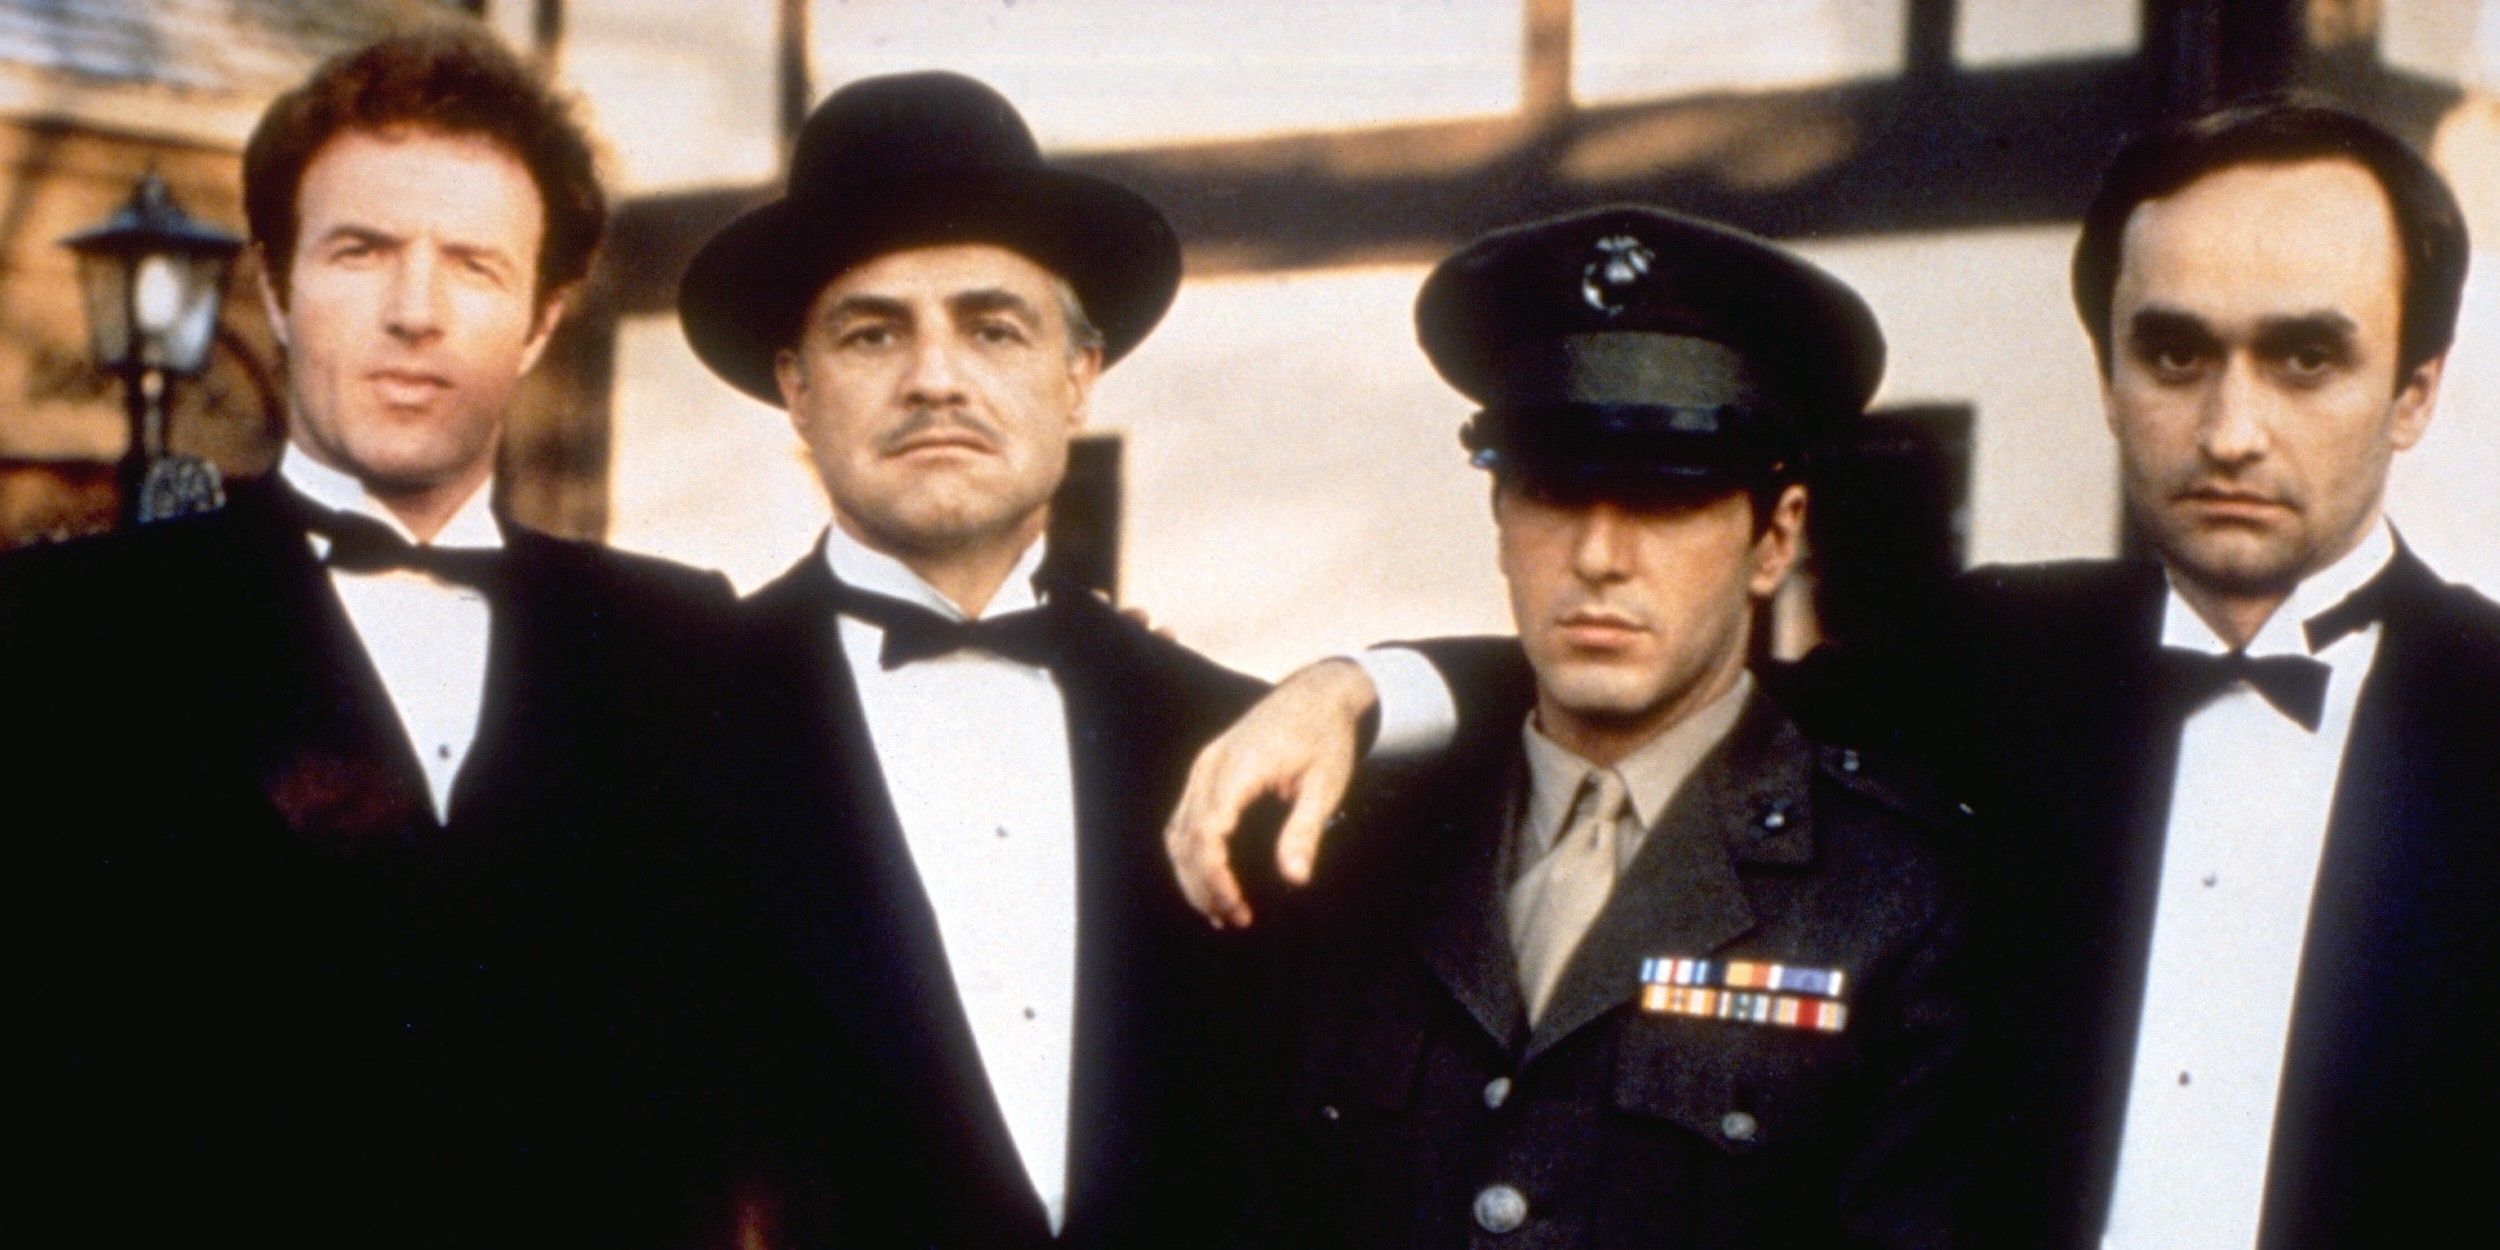 James Caan as Sonny Marlon Brando as Don Vito Corleone Al Pacino as Michael and John Cazale as Fredo in The Godfather